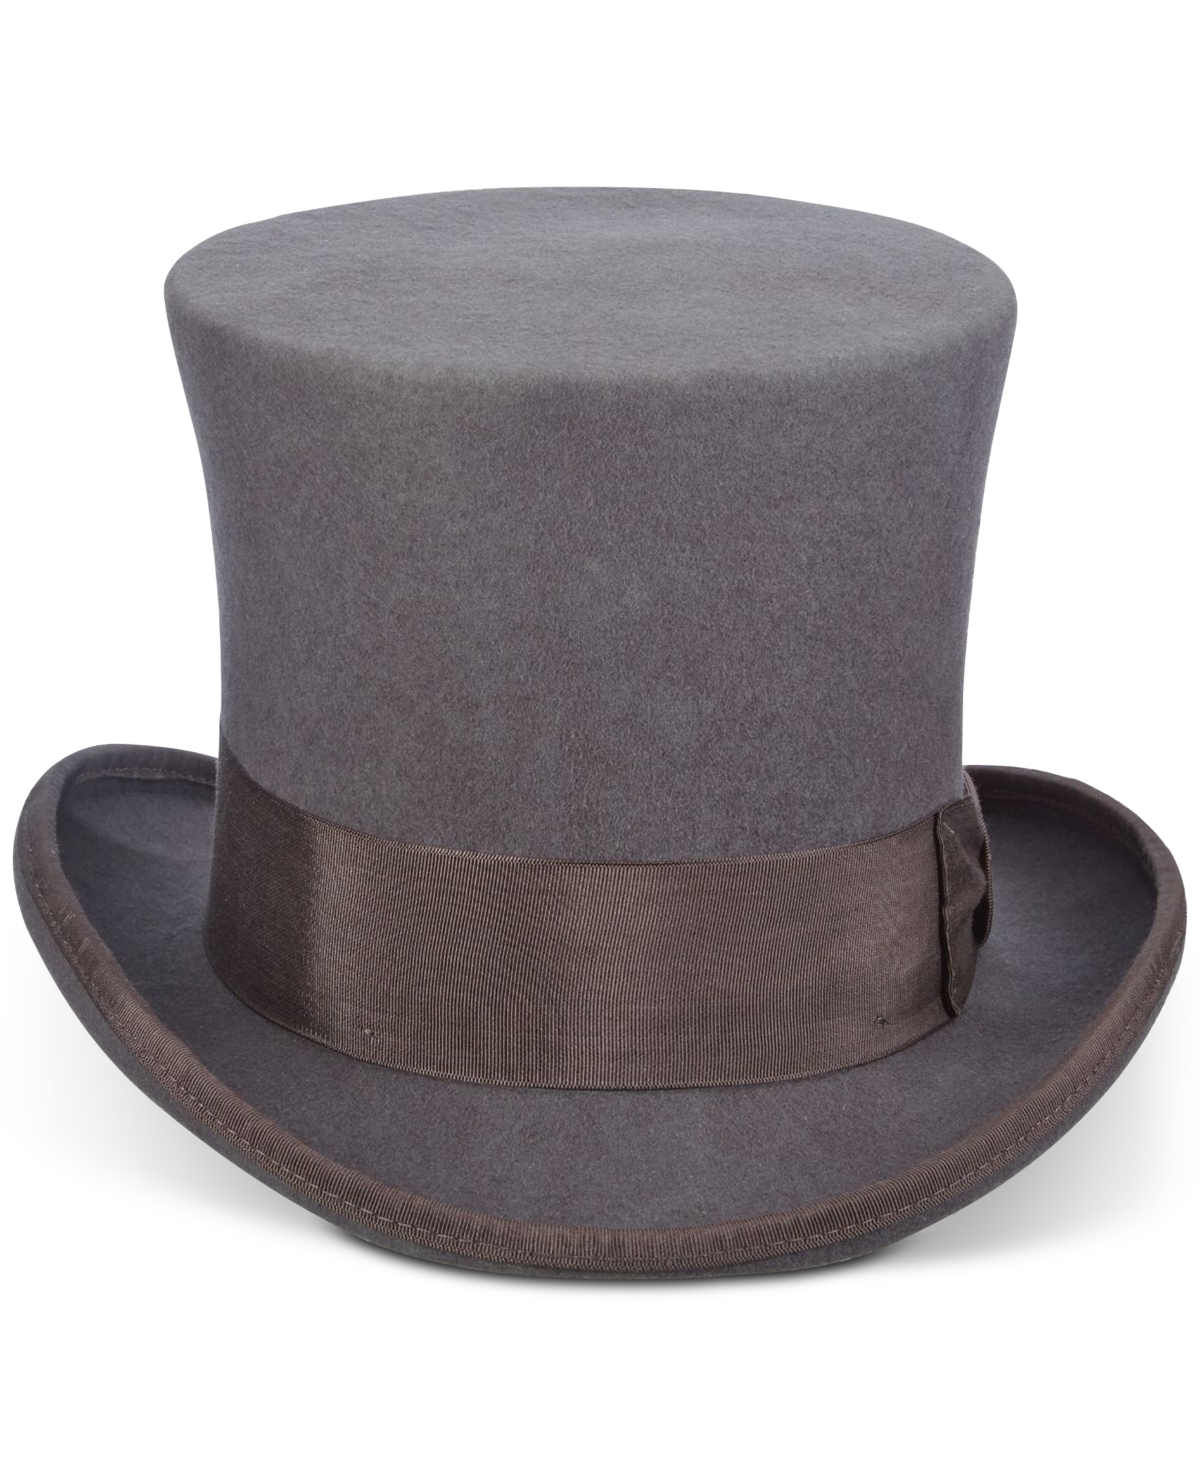 Men's Top Hat - Black